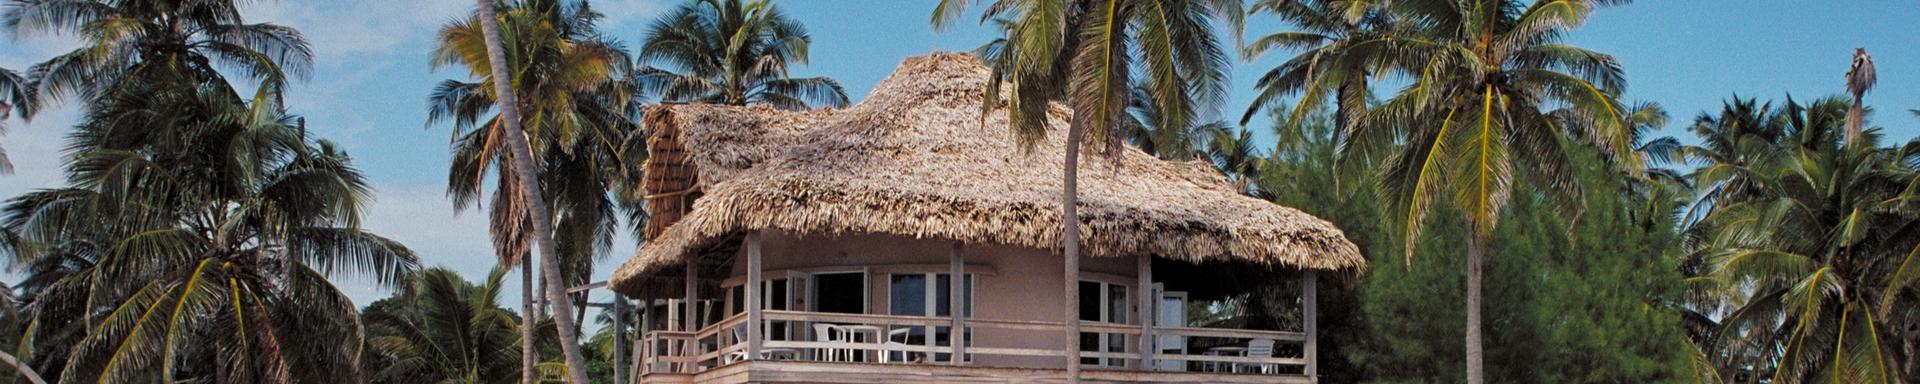 Xanadu Island Resort in Belize.